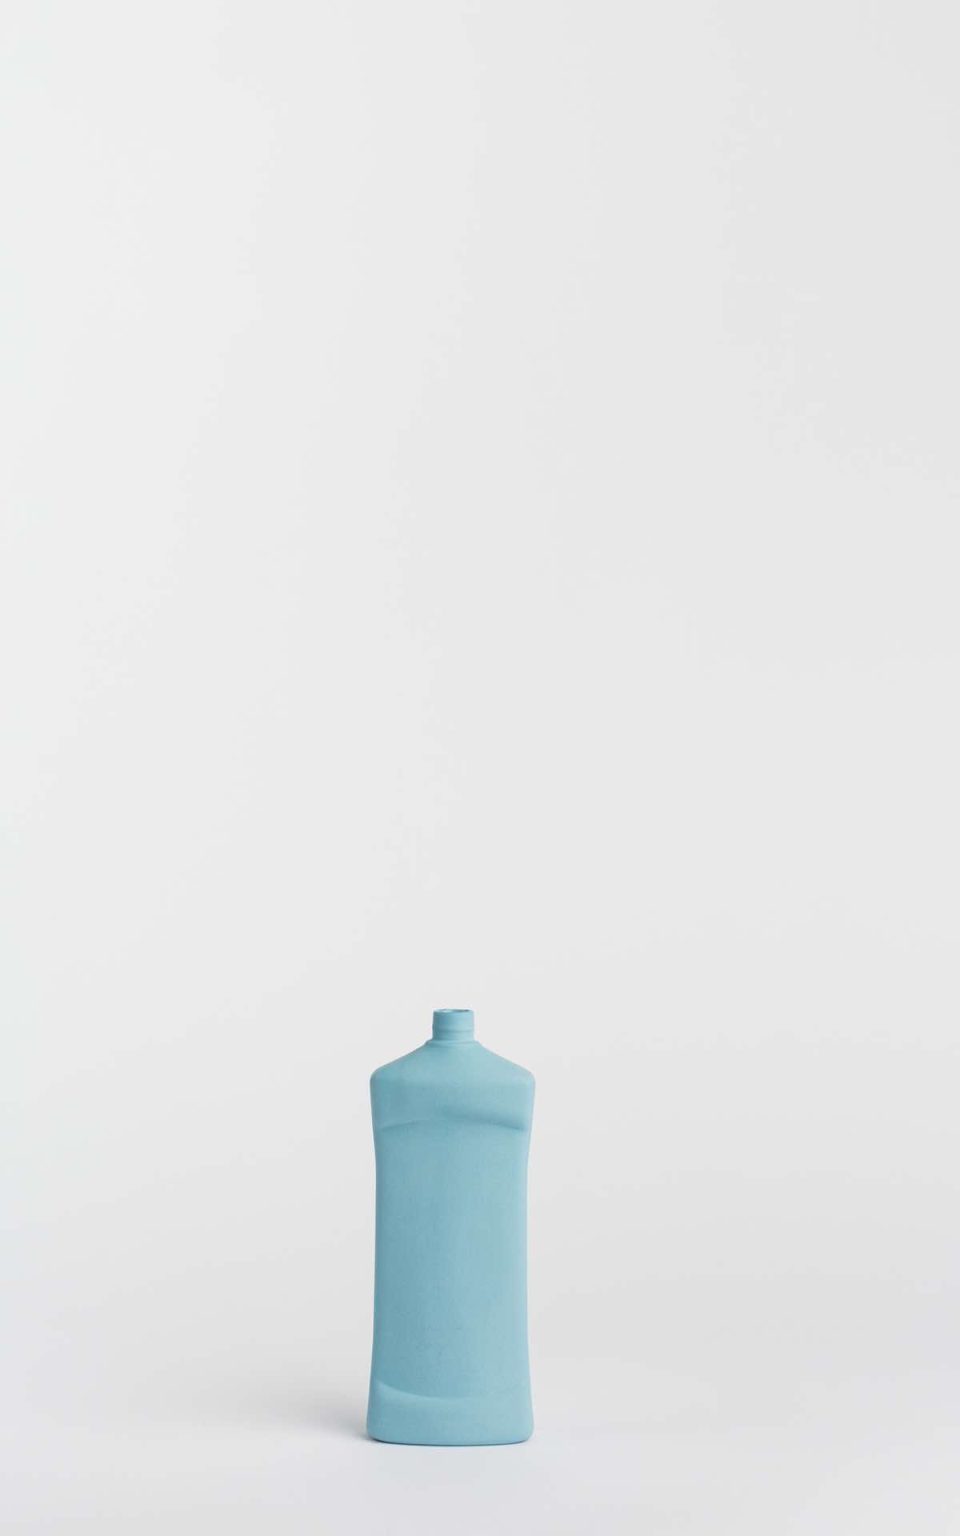 Prikazana je vaza brenda foekje fleur u svijetlo plavoj boji ispred sive pozadine. Vaza ima oblik kontejnera za sredstvo za pranje suđa.